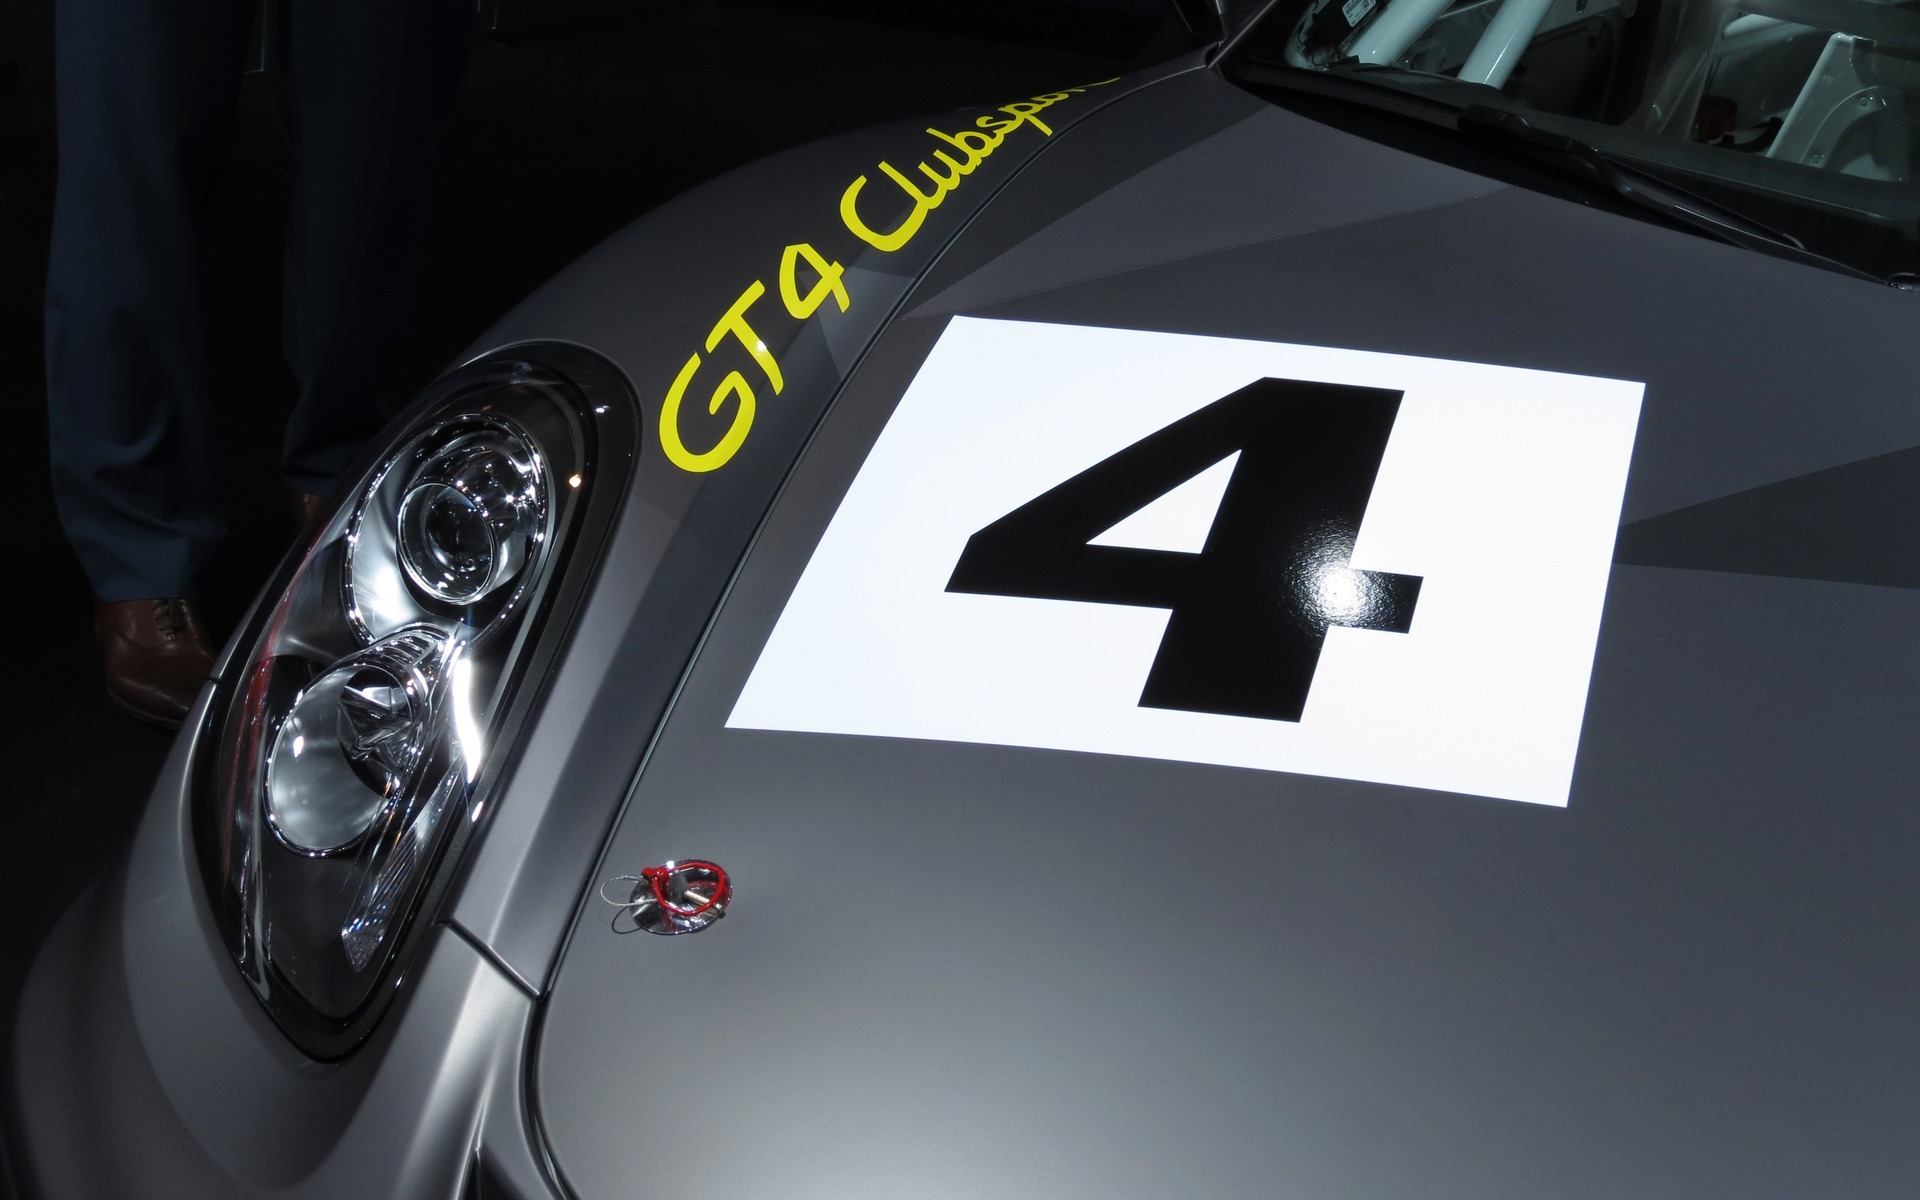 Les Cayman GT4 Clubsport seront prêtes pour la course telles que livrées